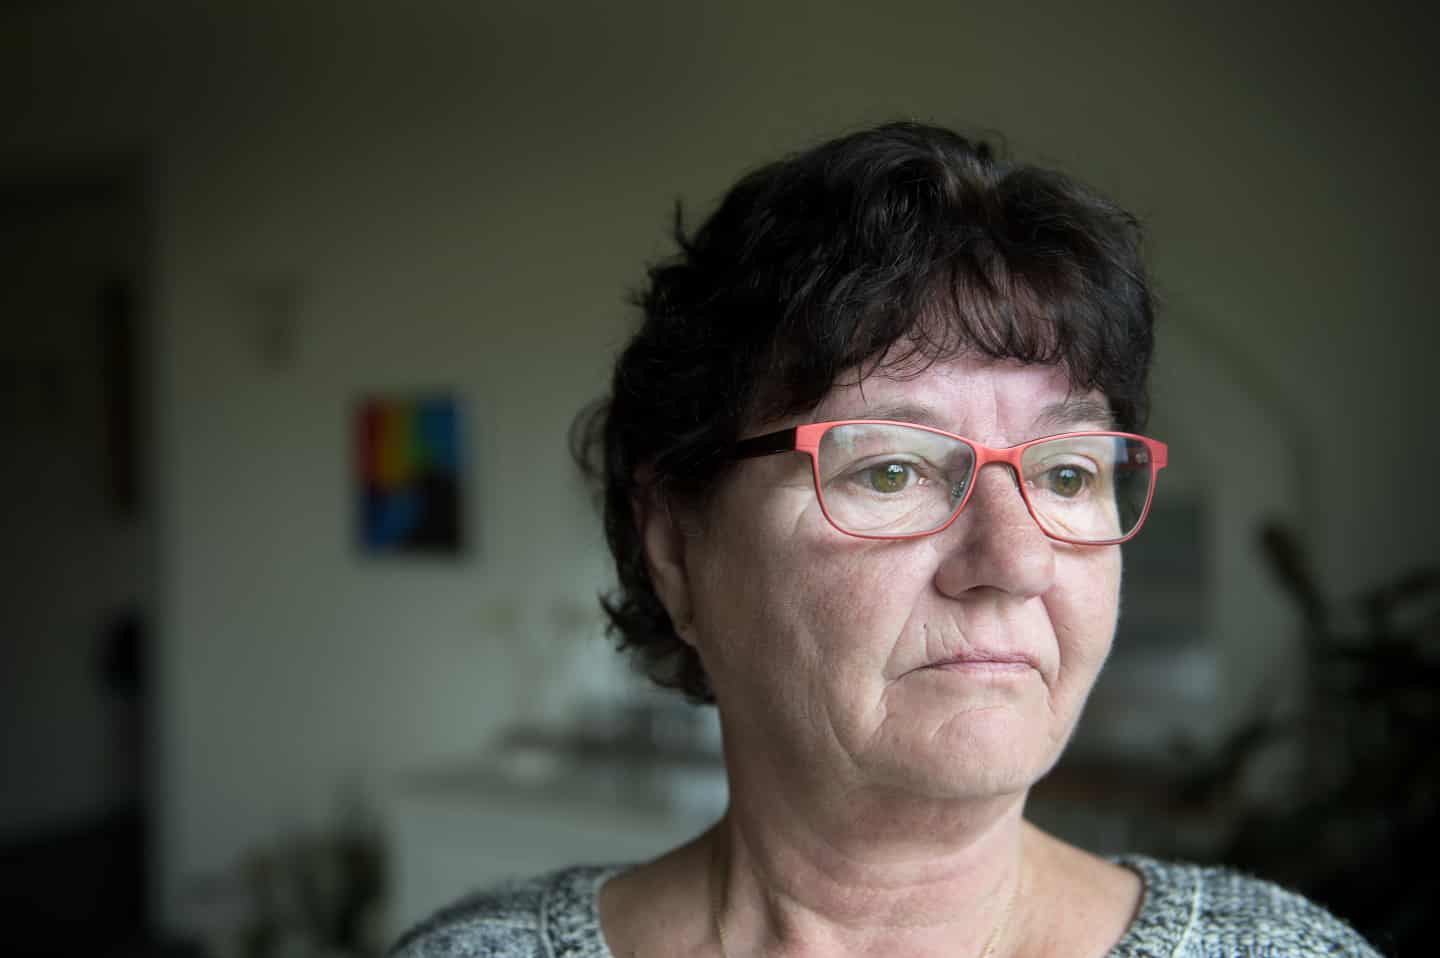 Lise har sloges kommunen om sin arbejdsevne i årevis: - Jeg føler mig ikke tryg ved systemet | fyens.dk